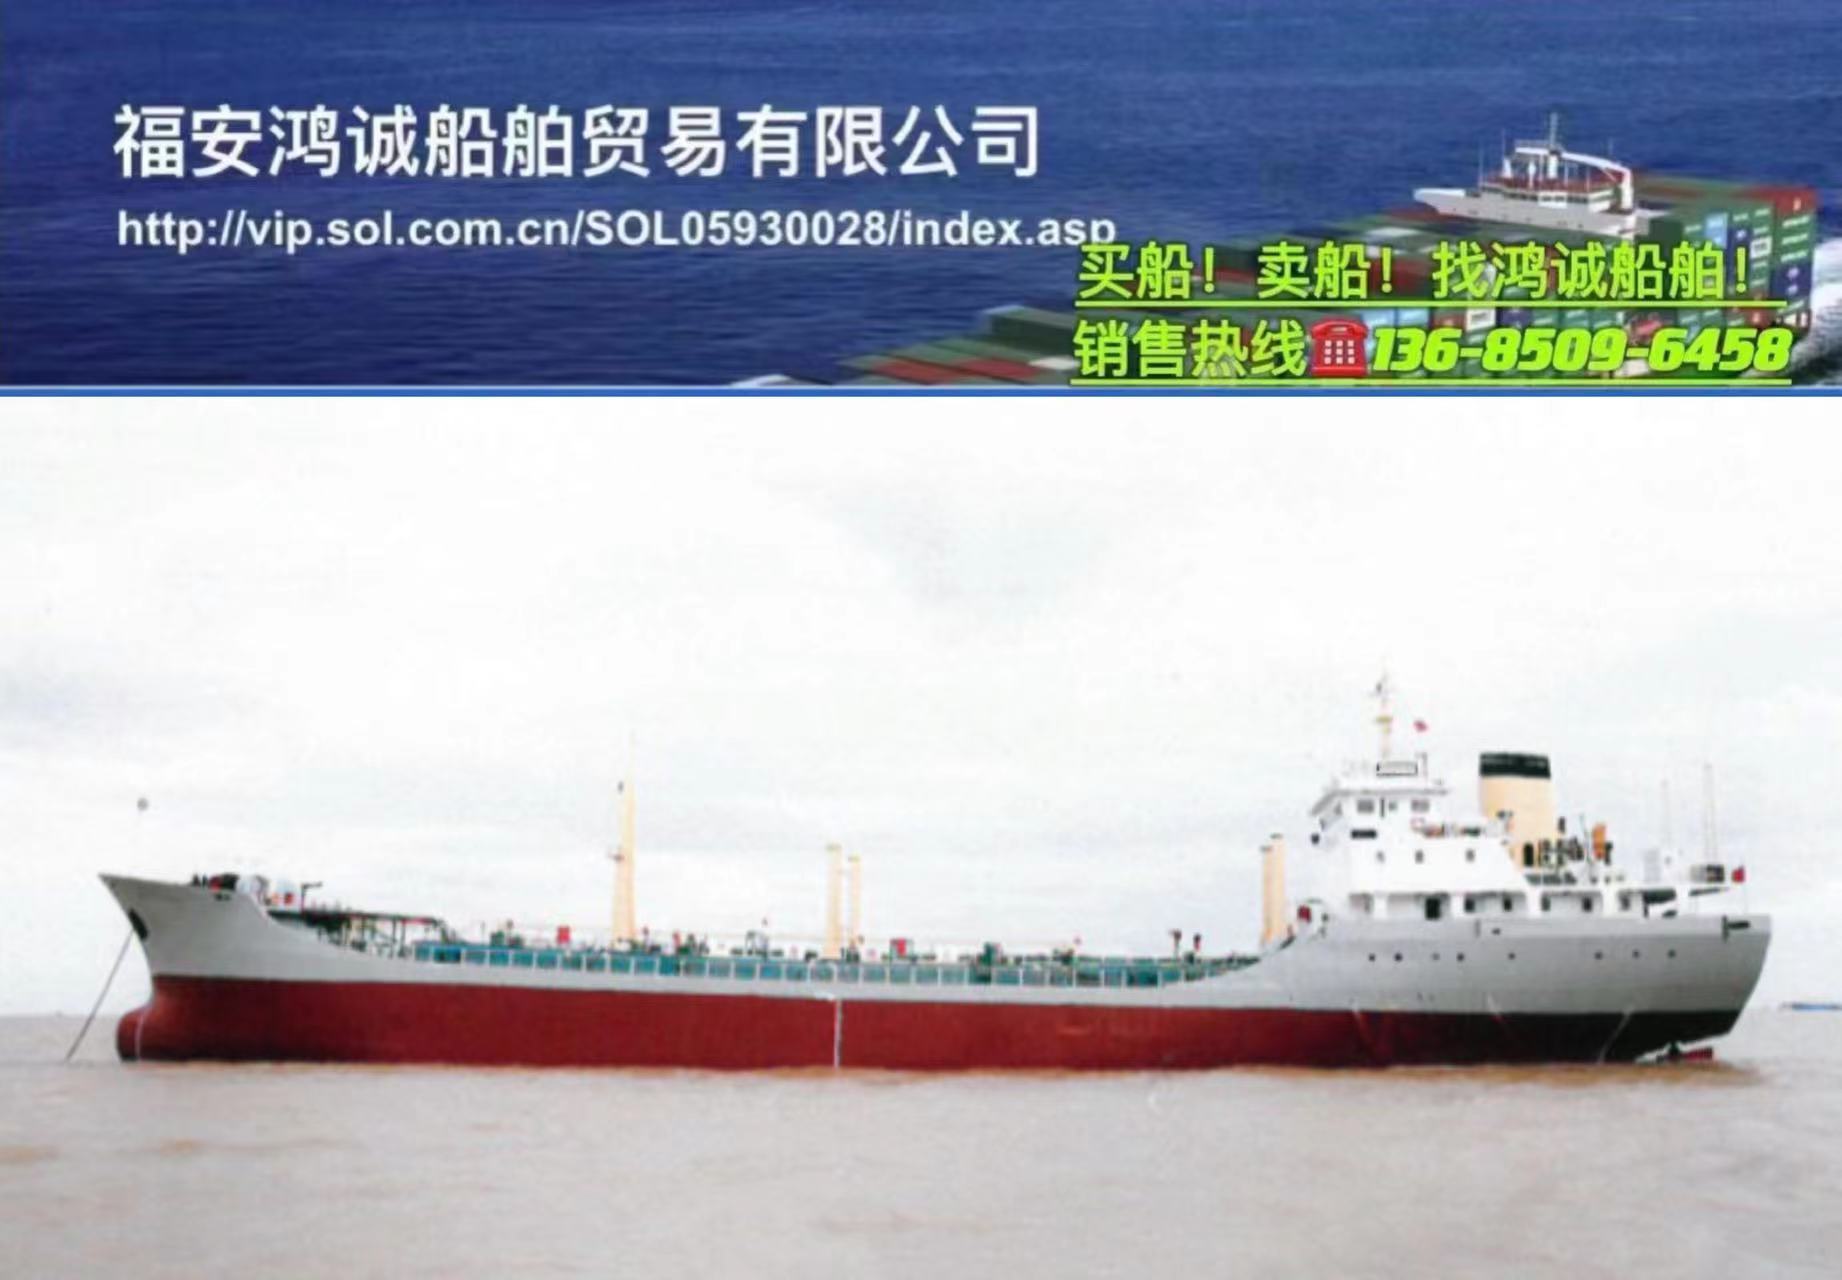 出售3500吨油船 2001年浙江温州建造